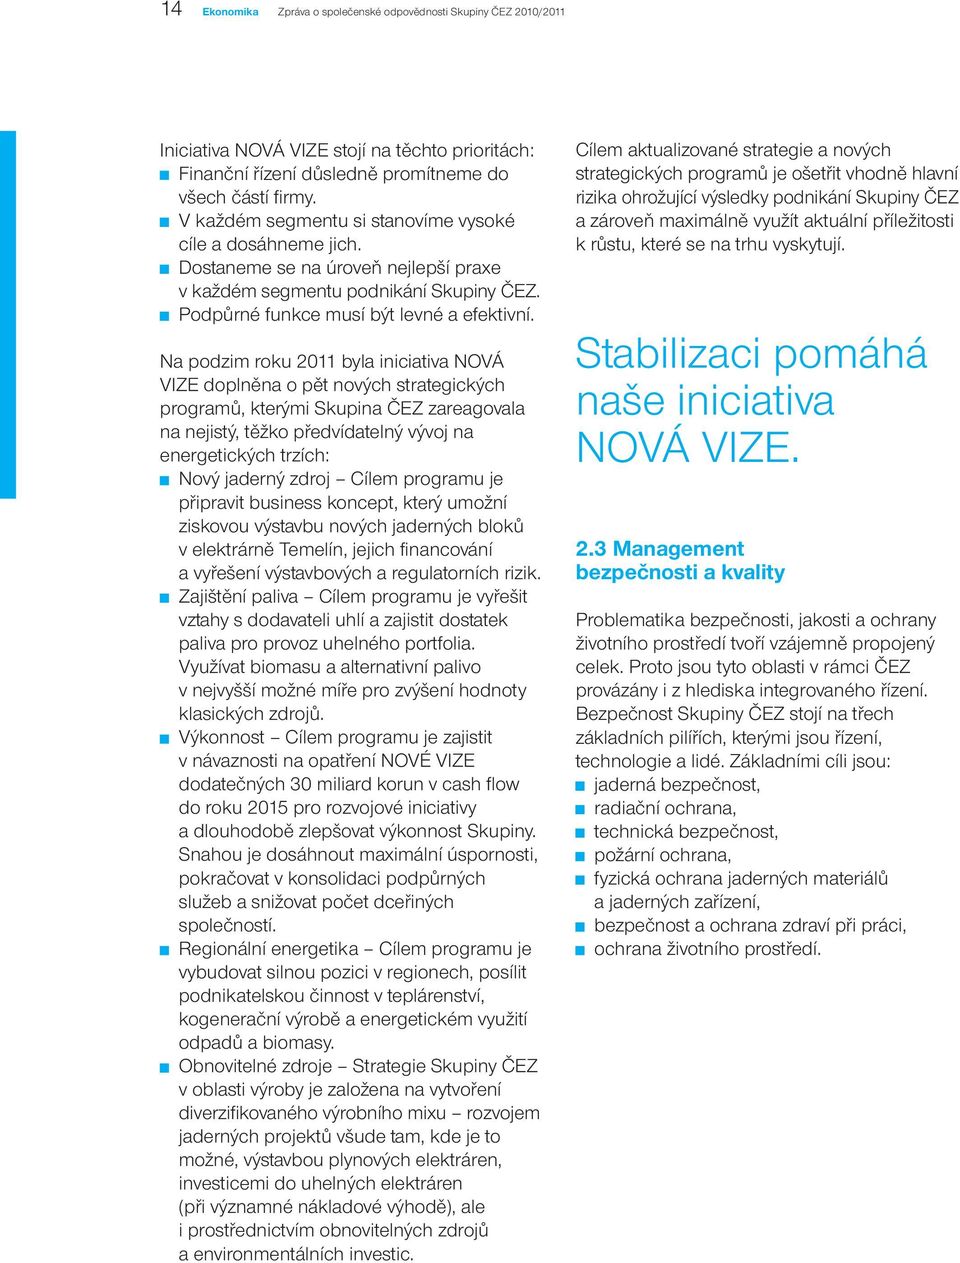 Na podzim roku 2011 byla iniciativa NOVÁ VIZE doplněna o pět nových strategických programů, kterými Skupina ČEZ zareagovala na nejistý, těžko předvídatelný vývoj na energetických trzích: Nový jaderný